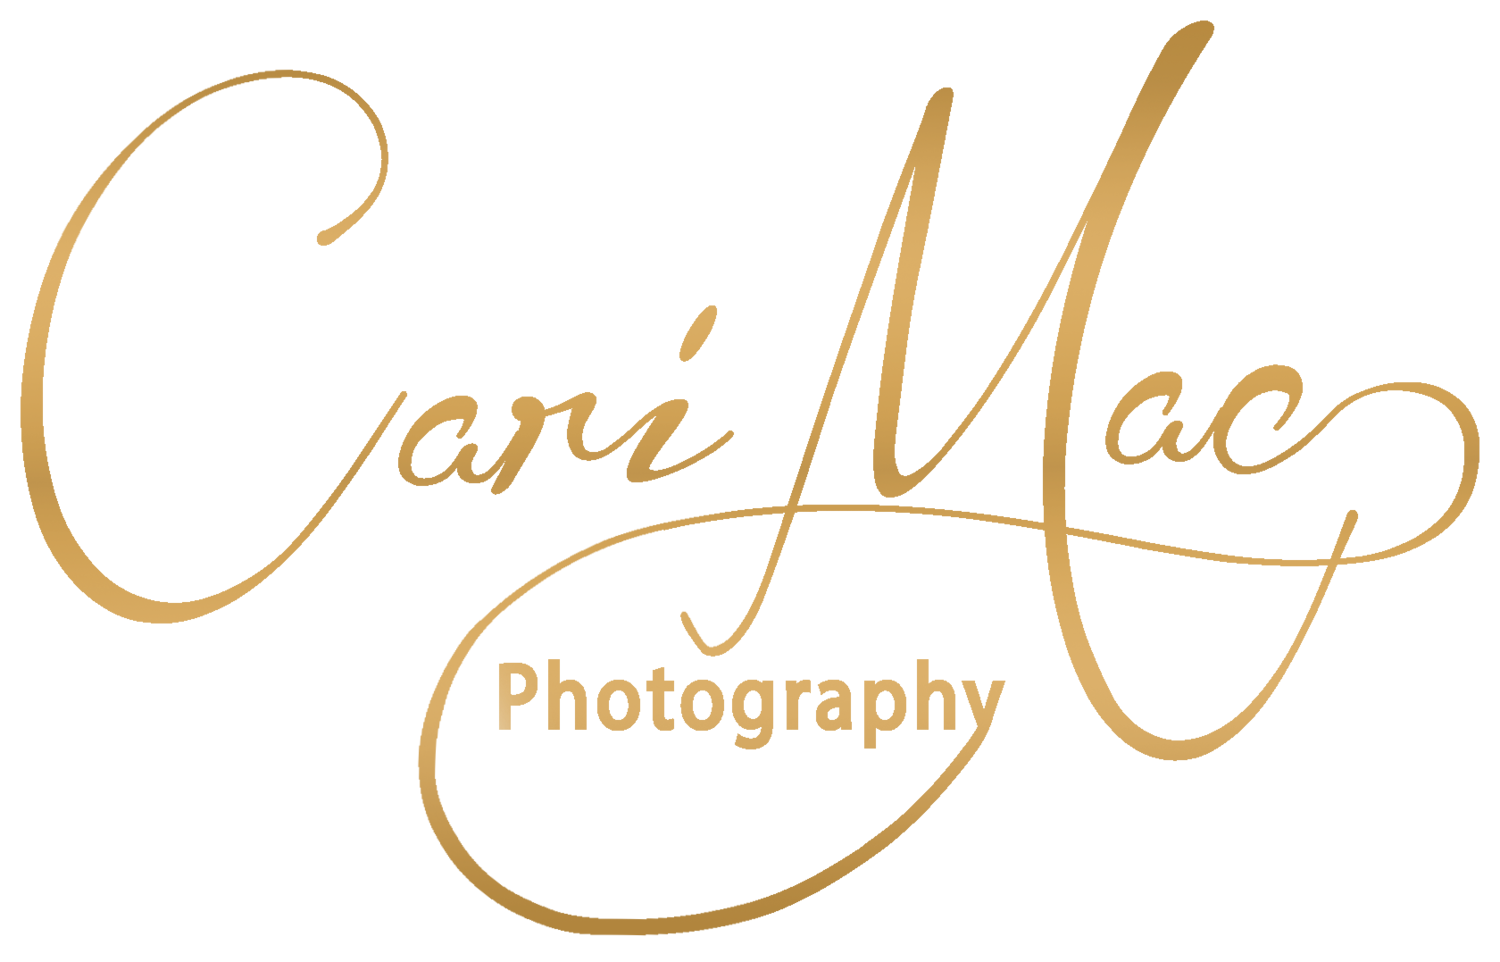 Cari Mac Photography